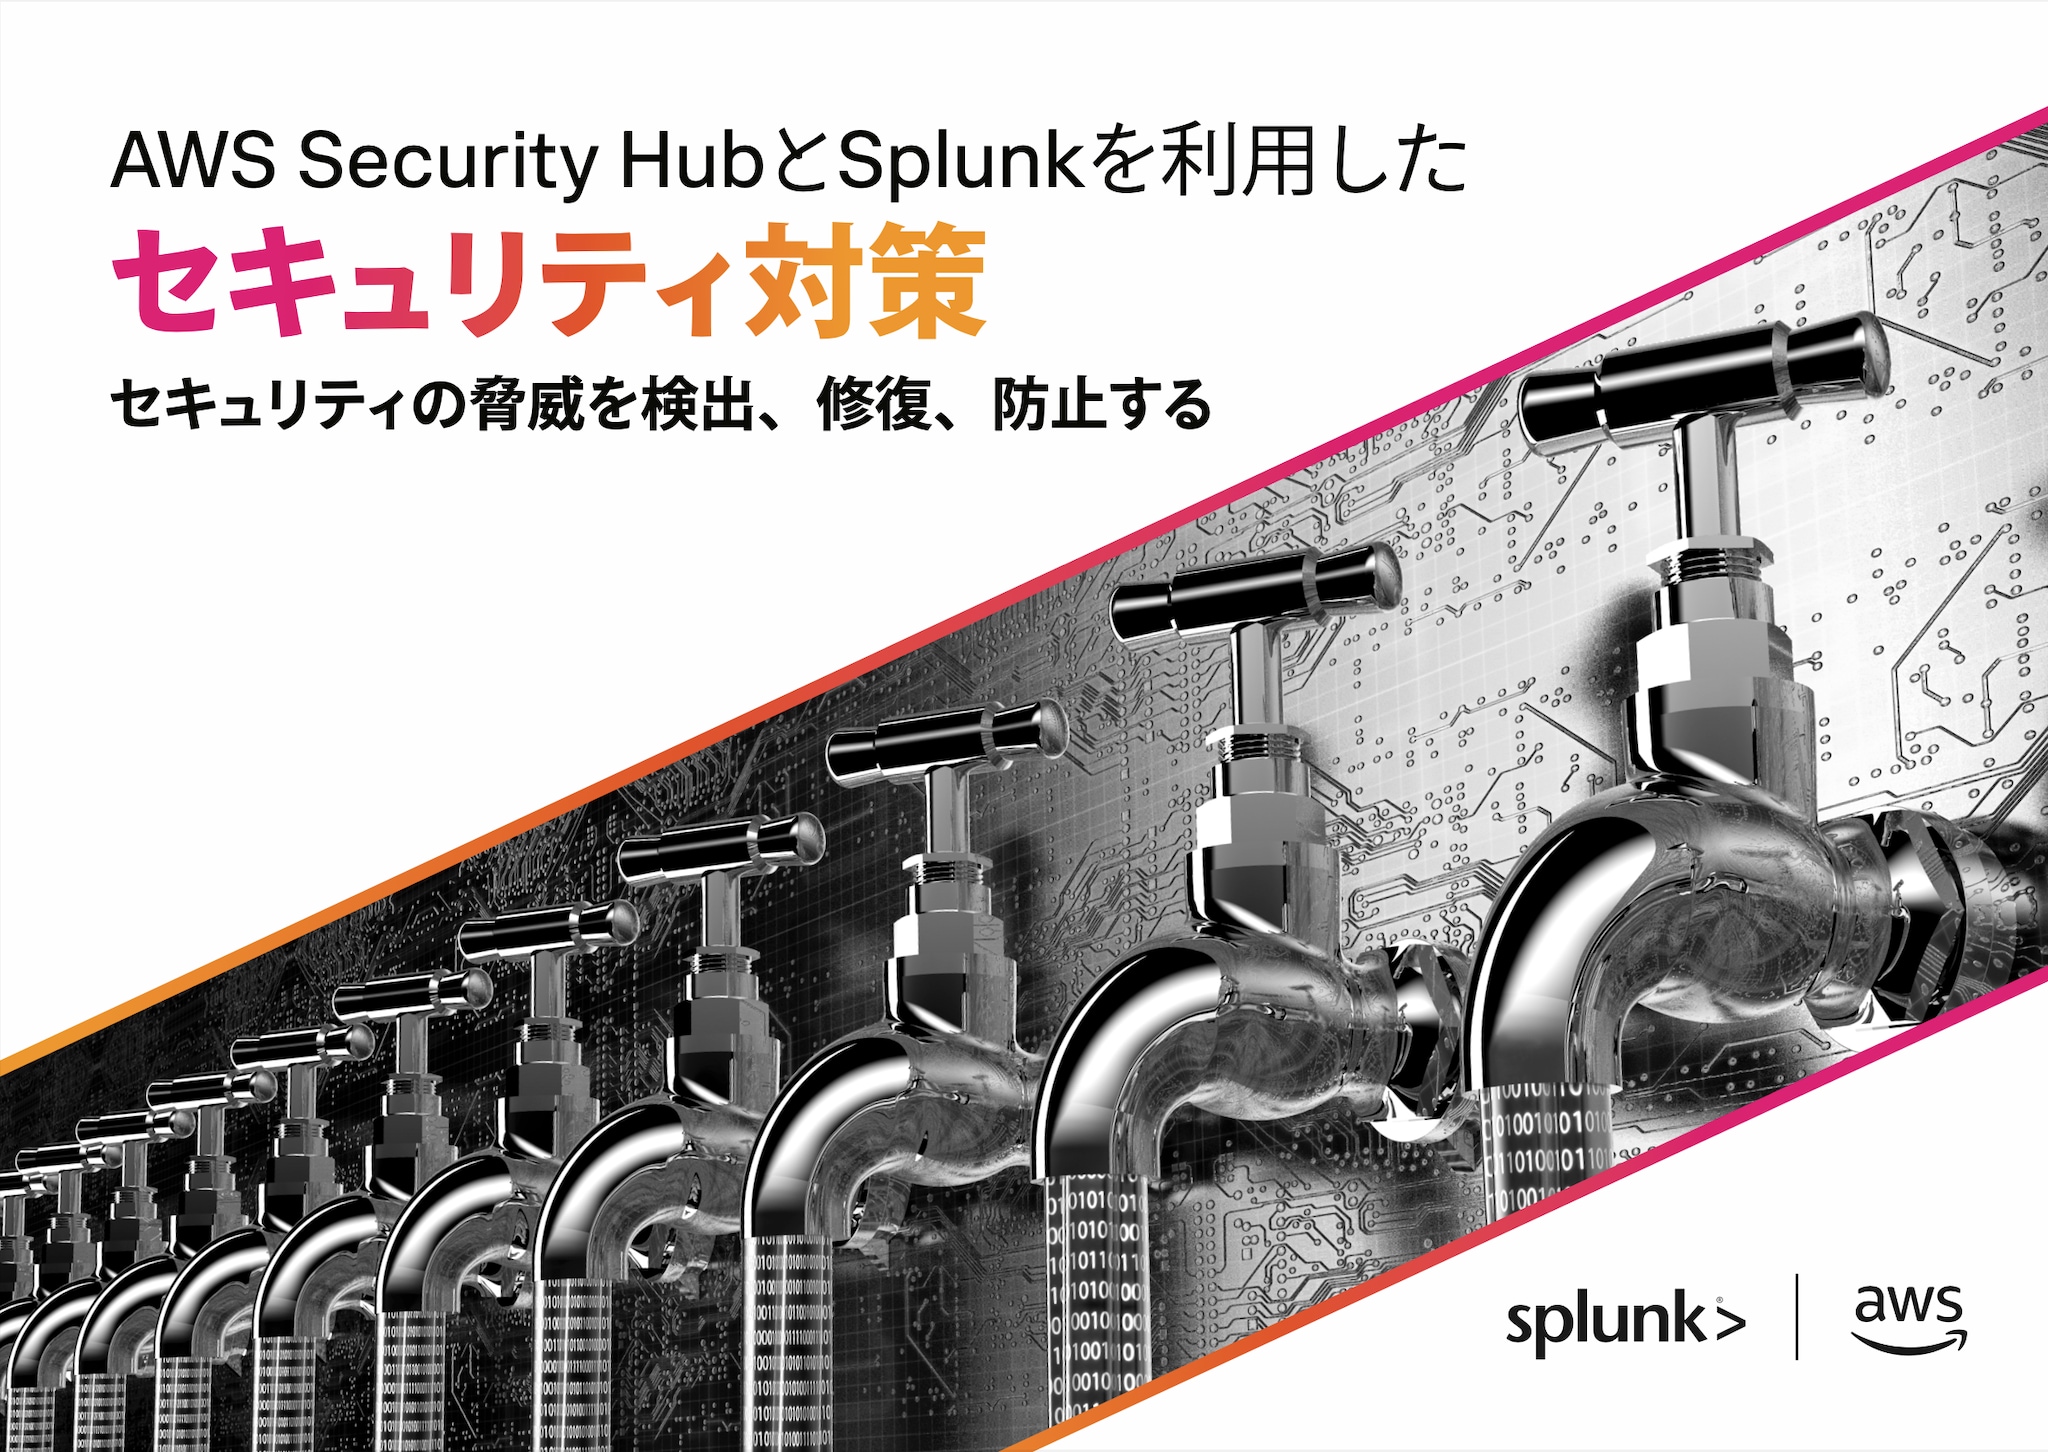 AWS Security HubとSplunkを利用したセキュリティ対策